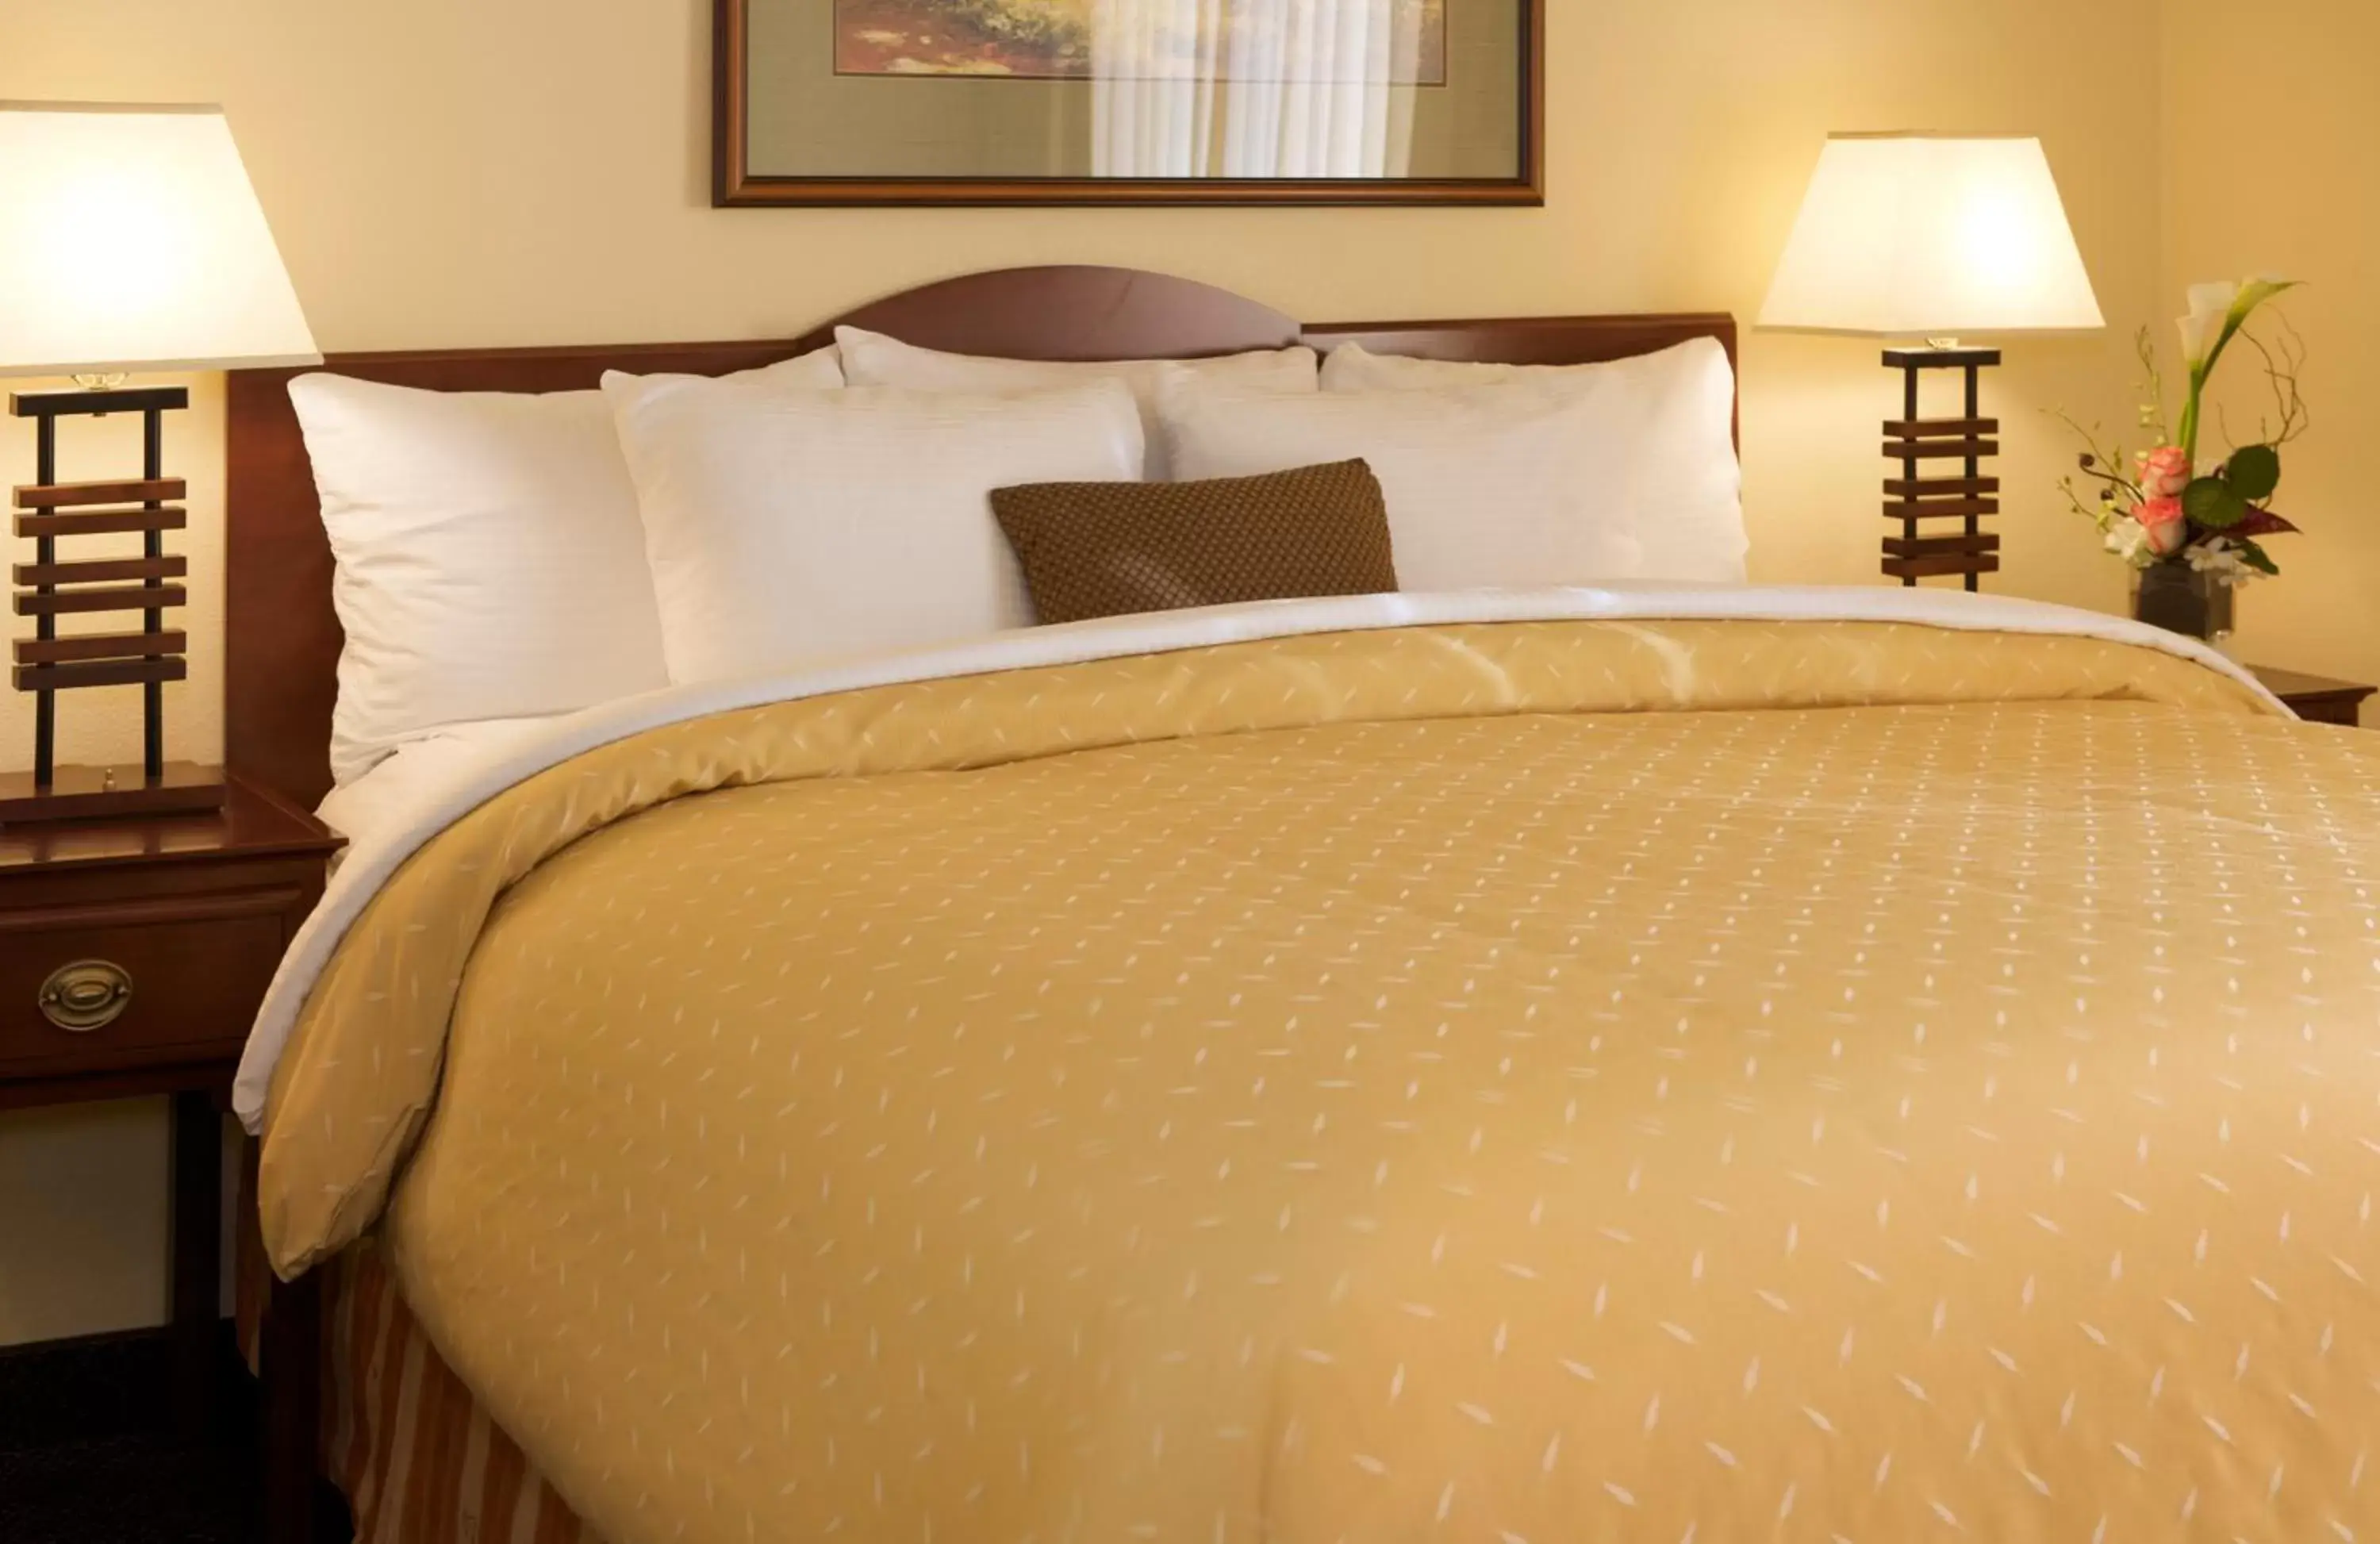 Bedroom, Room Photo in Larkspur Landing Bellevue - An All-Suite Hotel